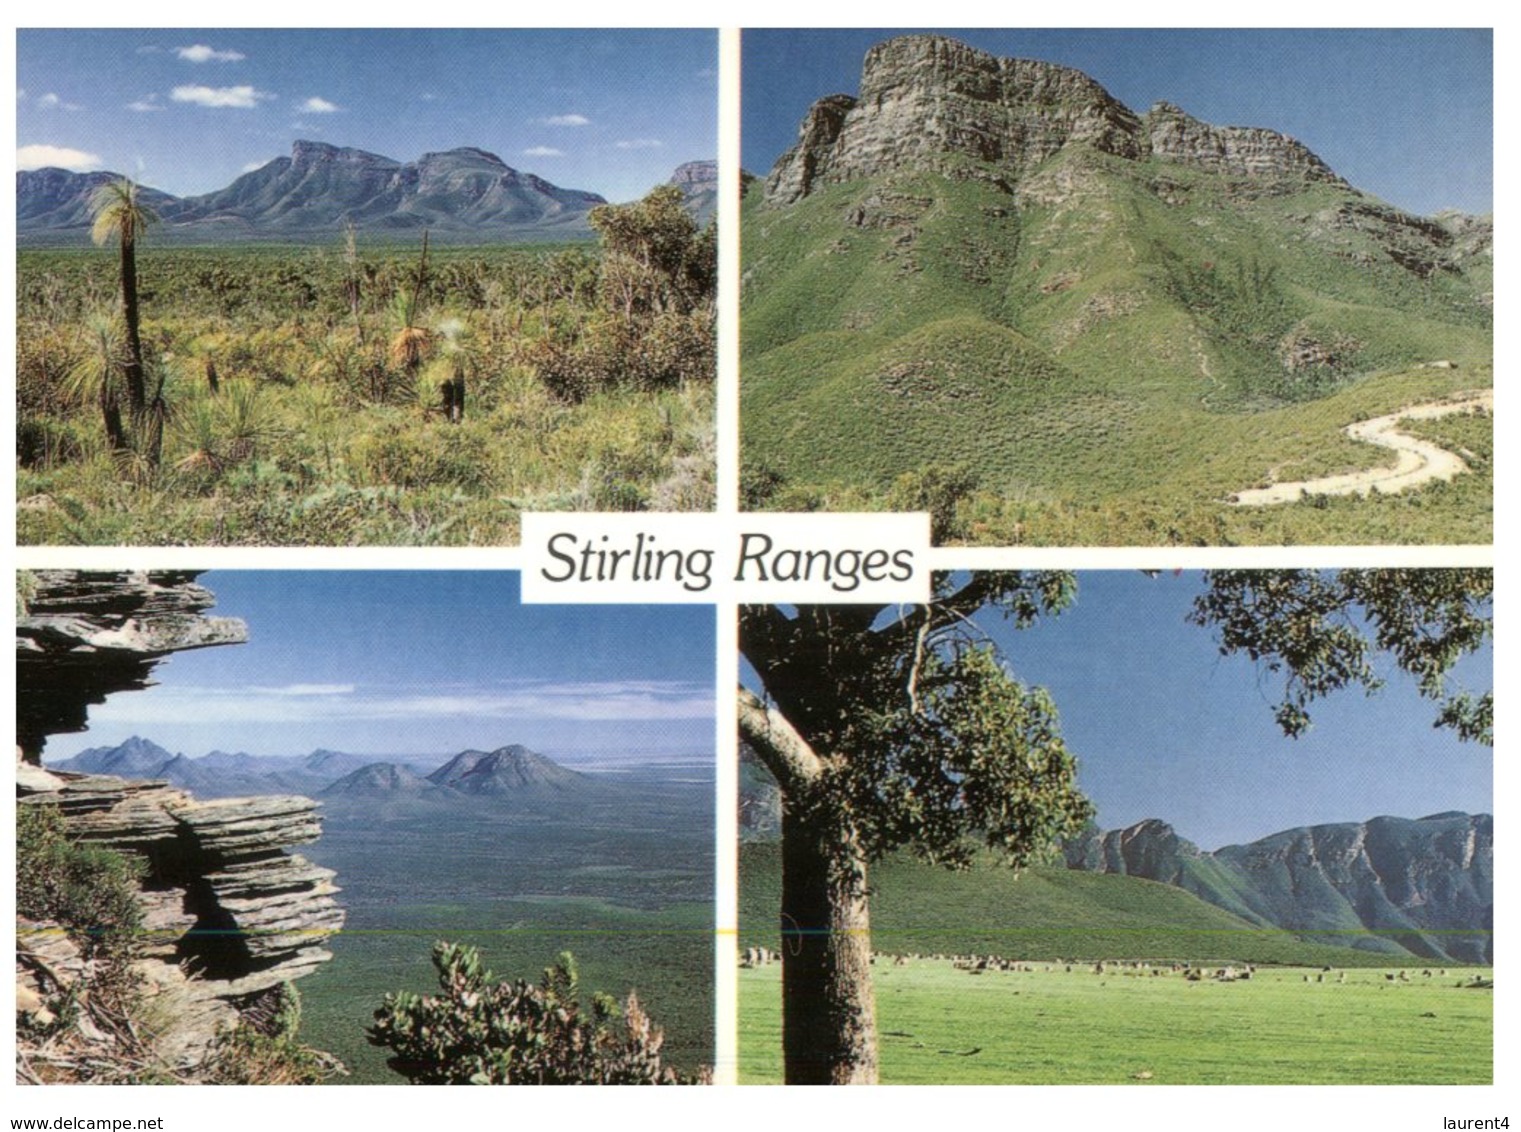 (13) Australia - SA - Stirling Ranges - Flinders Ranges